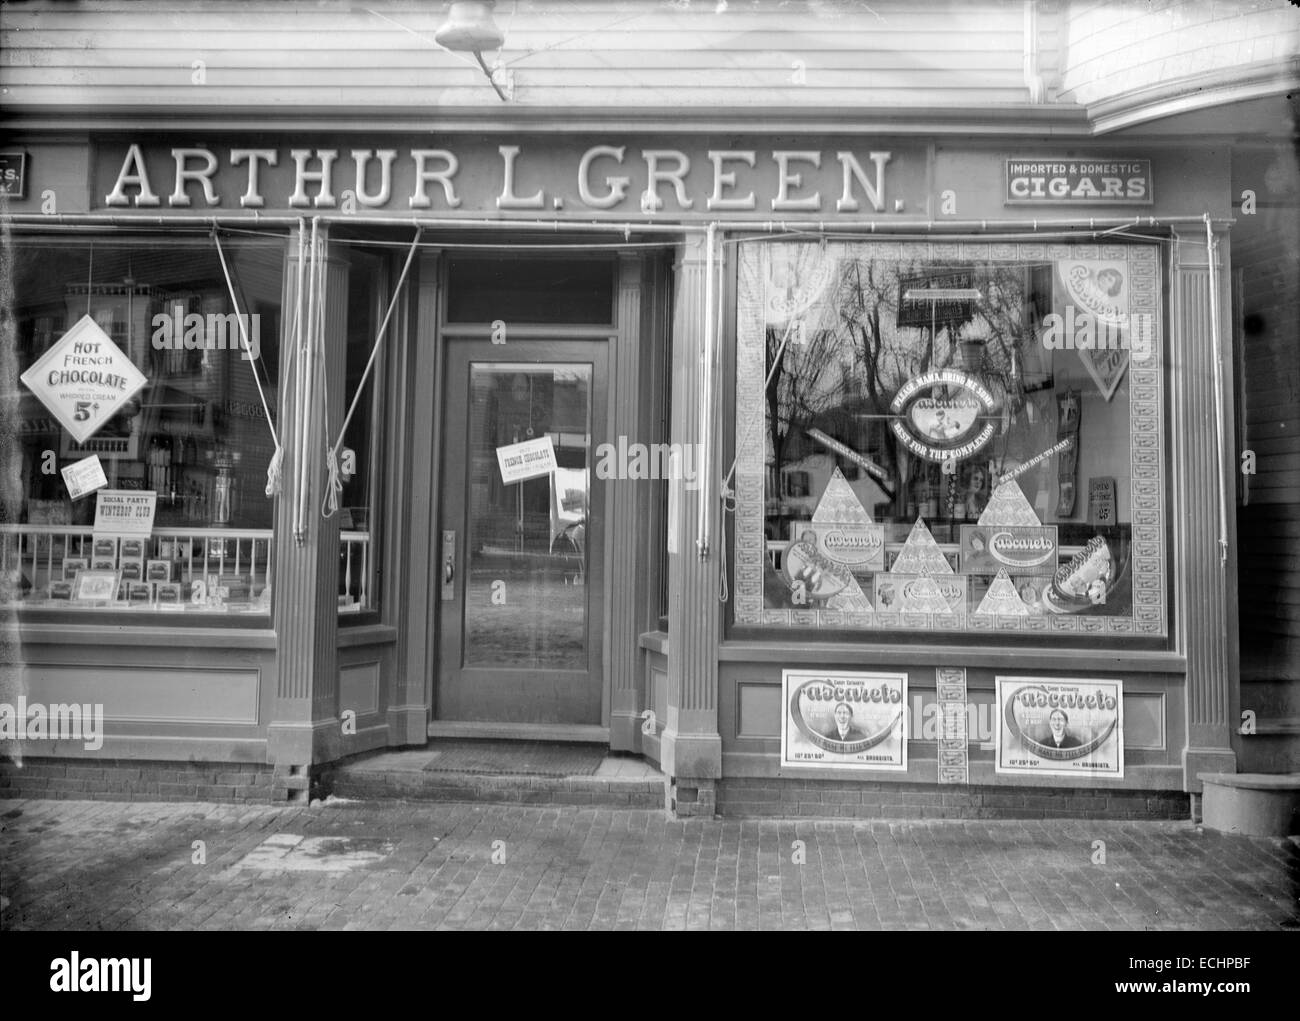 Meubles anciens, vers 1905, de l'image Arthur L. Green Pharmacy, située au 2 rue de l'école à Manchester-by-the-Sea, Massachusetts, USA. Banque D'Images